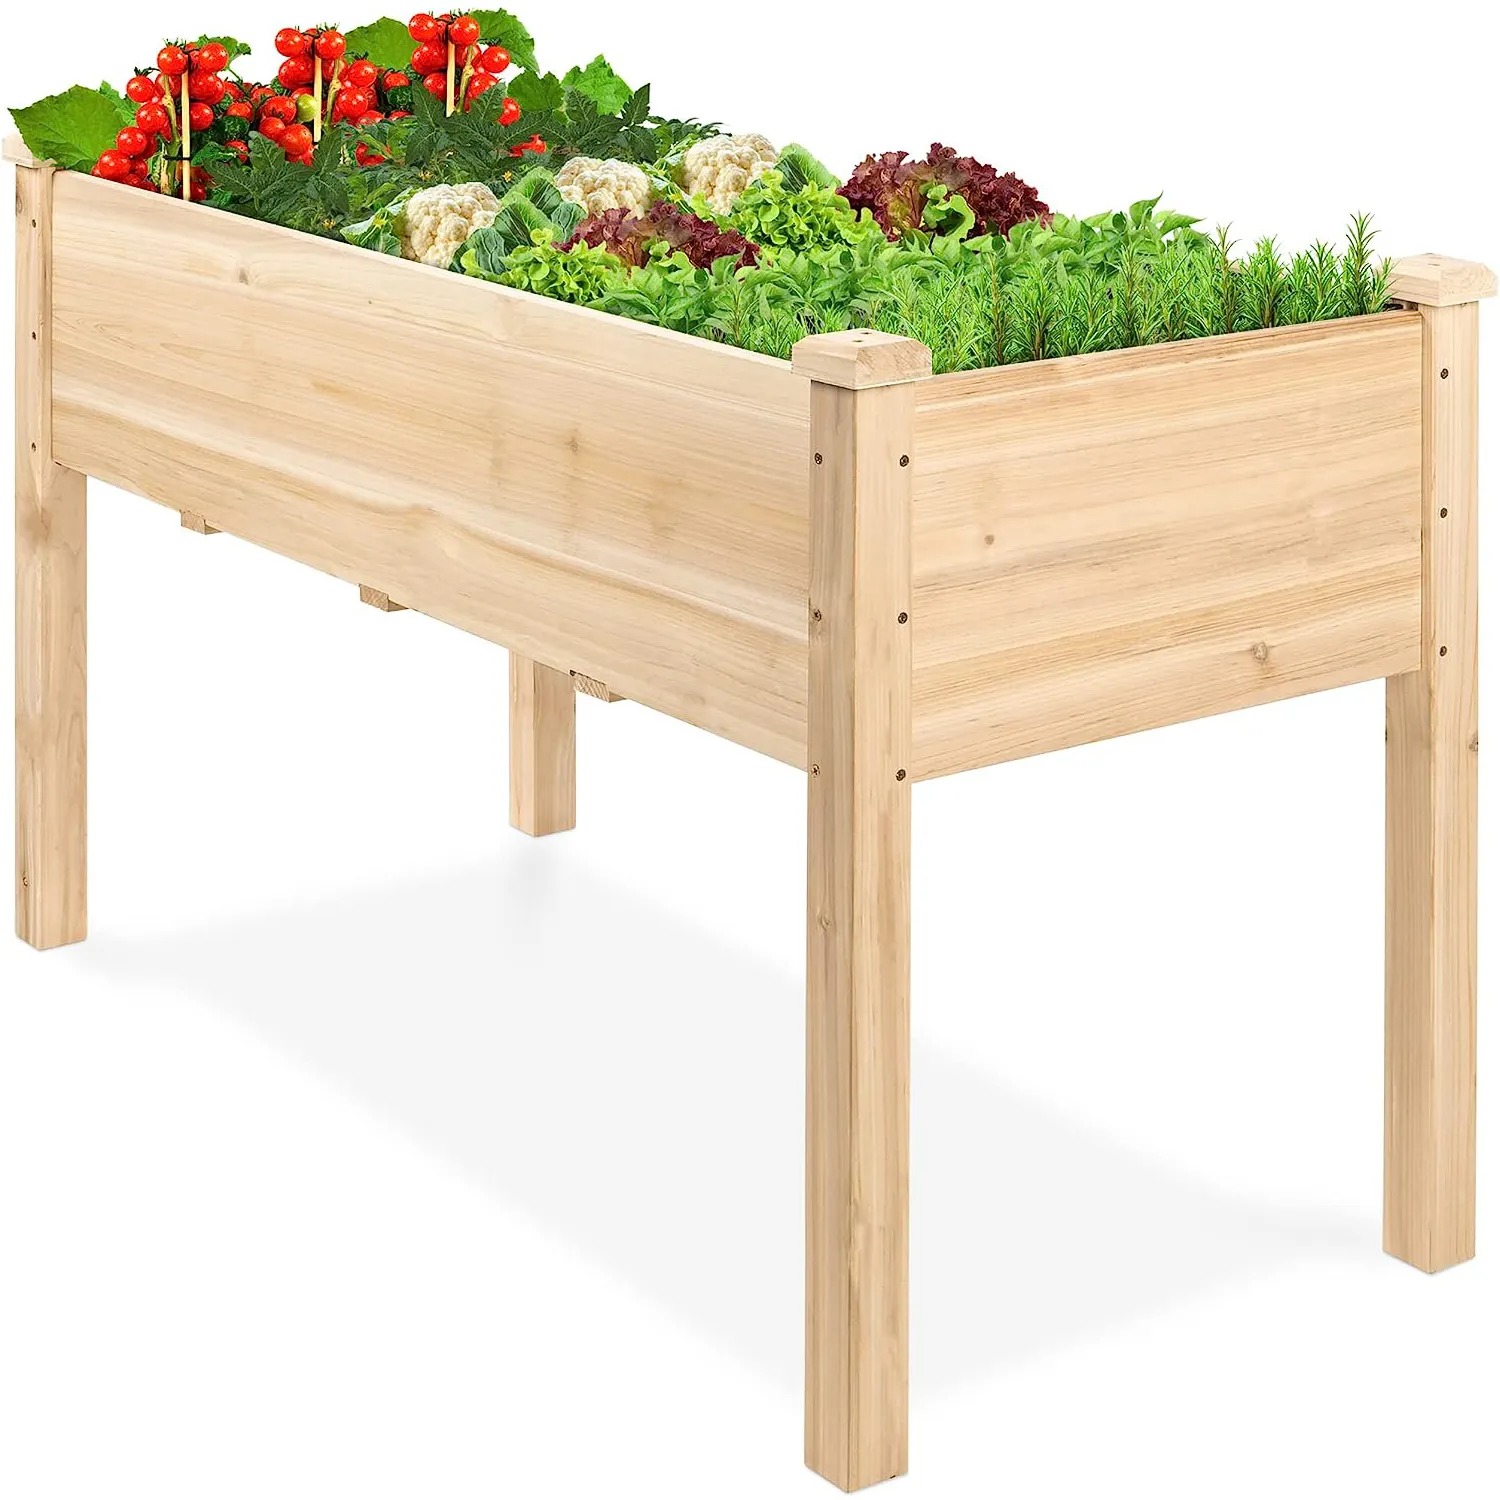 Töpfchen Holz Töpfchen Tisch Outdoor hölzernes Gartenaufsatz mit abnehmbarem Waschbecken Schublade Regal Regale